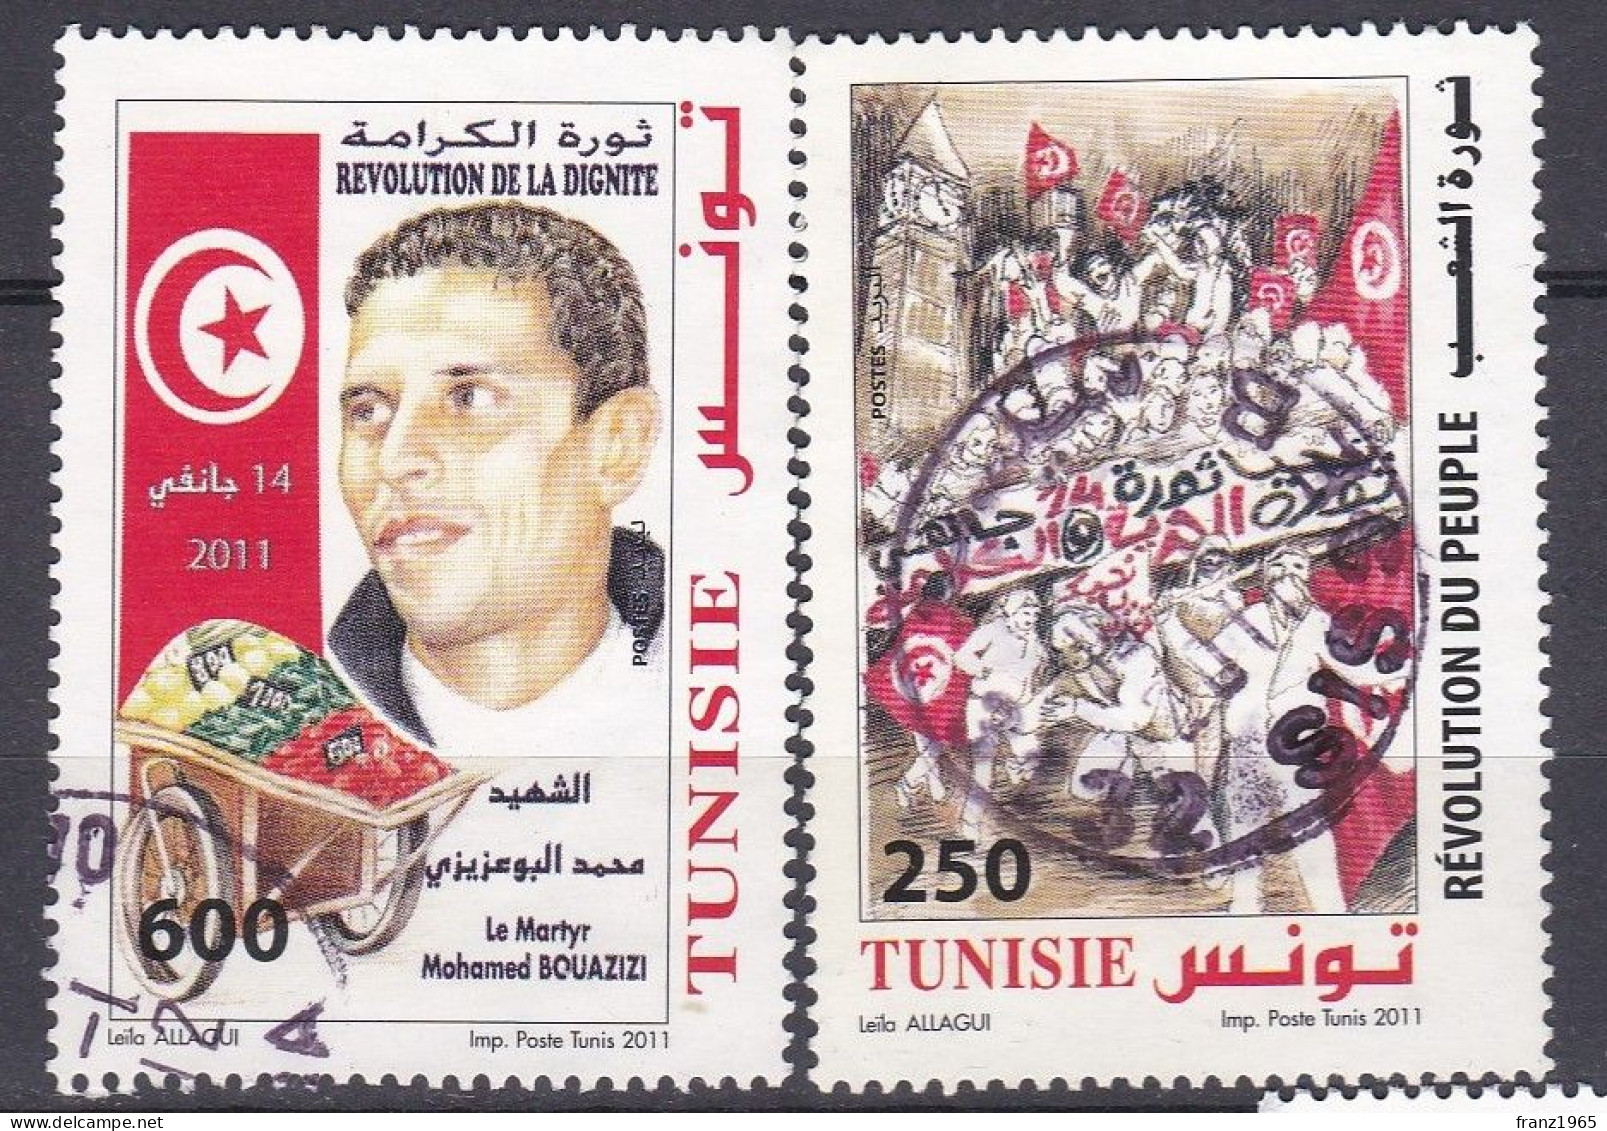 Revolution - 2011 - Tunisia (1956-...)